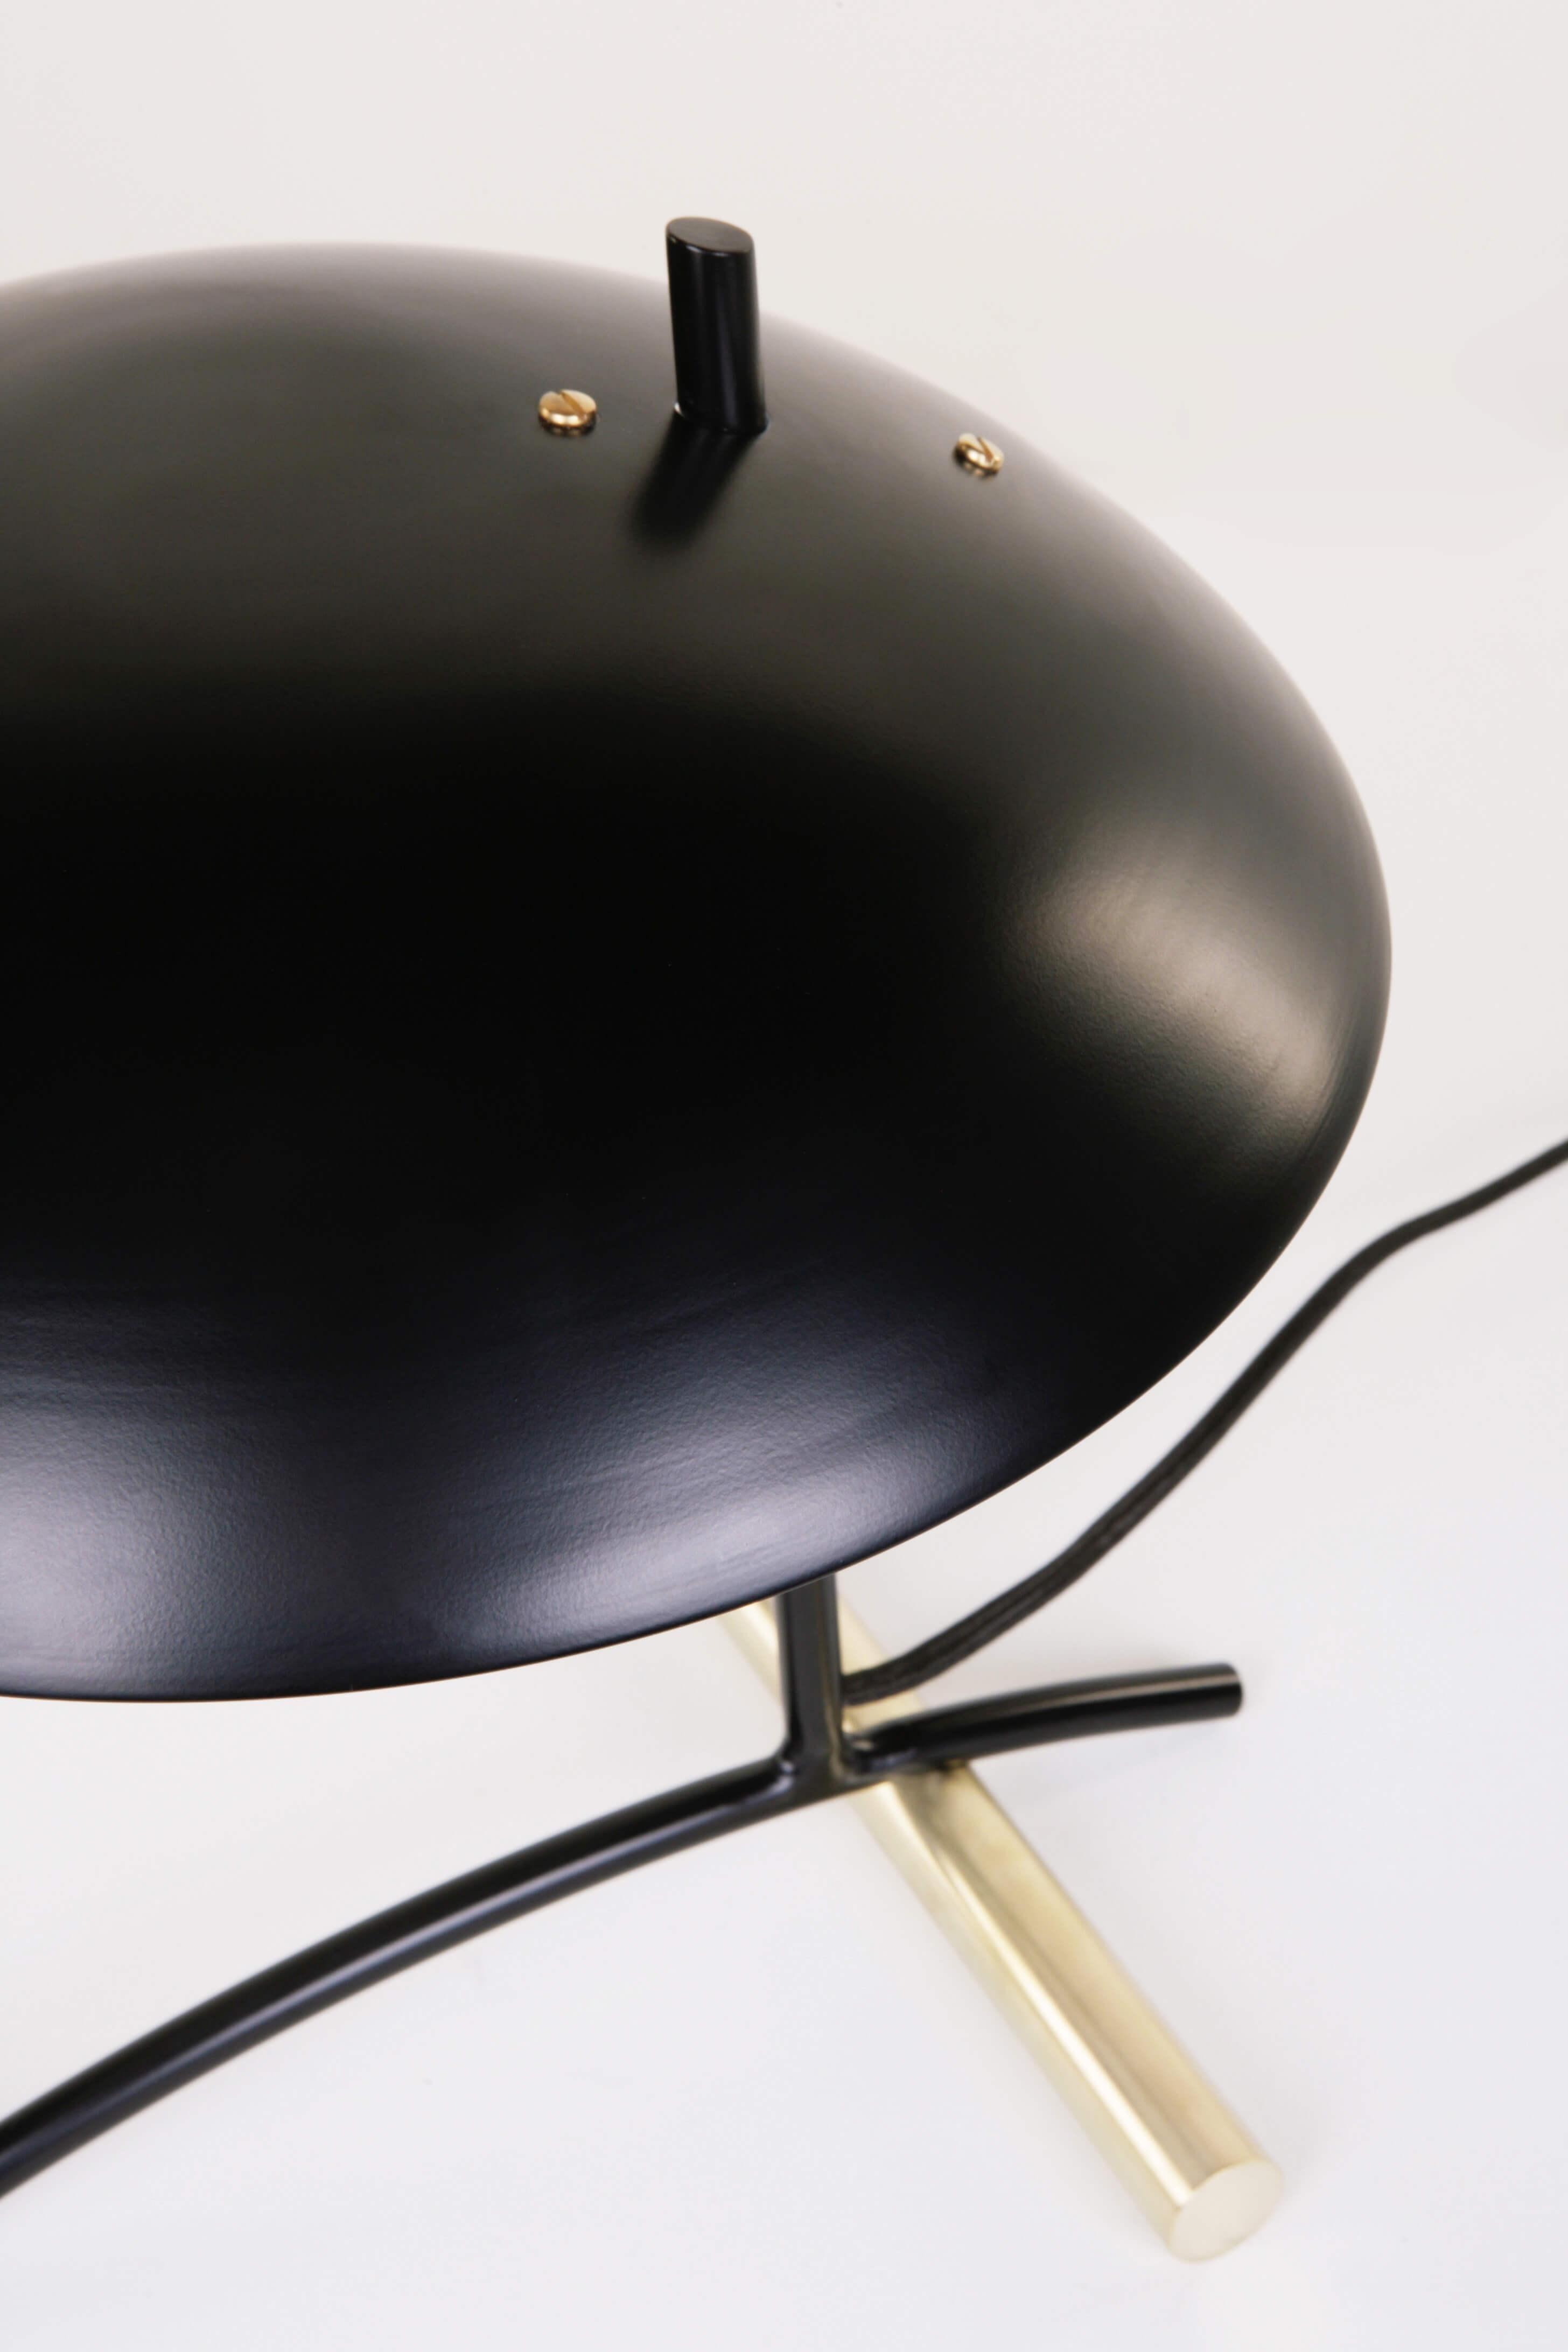 La lampe de table , conçue par Dean Edmonds pour Atelier de Troupe , est composée d'une tige en acier et d'un poids tubulaire en acier massif ou en laiton pur , avec un abat-jour en aluminium . Les options de finition de l'abat-jour sont le noir ,